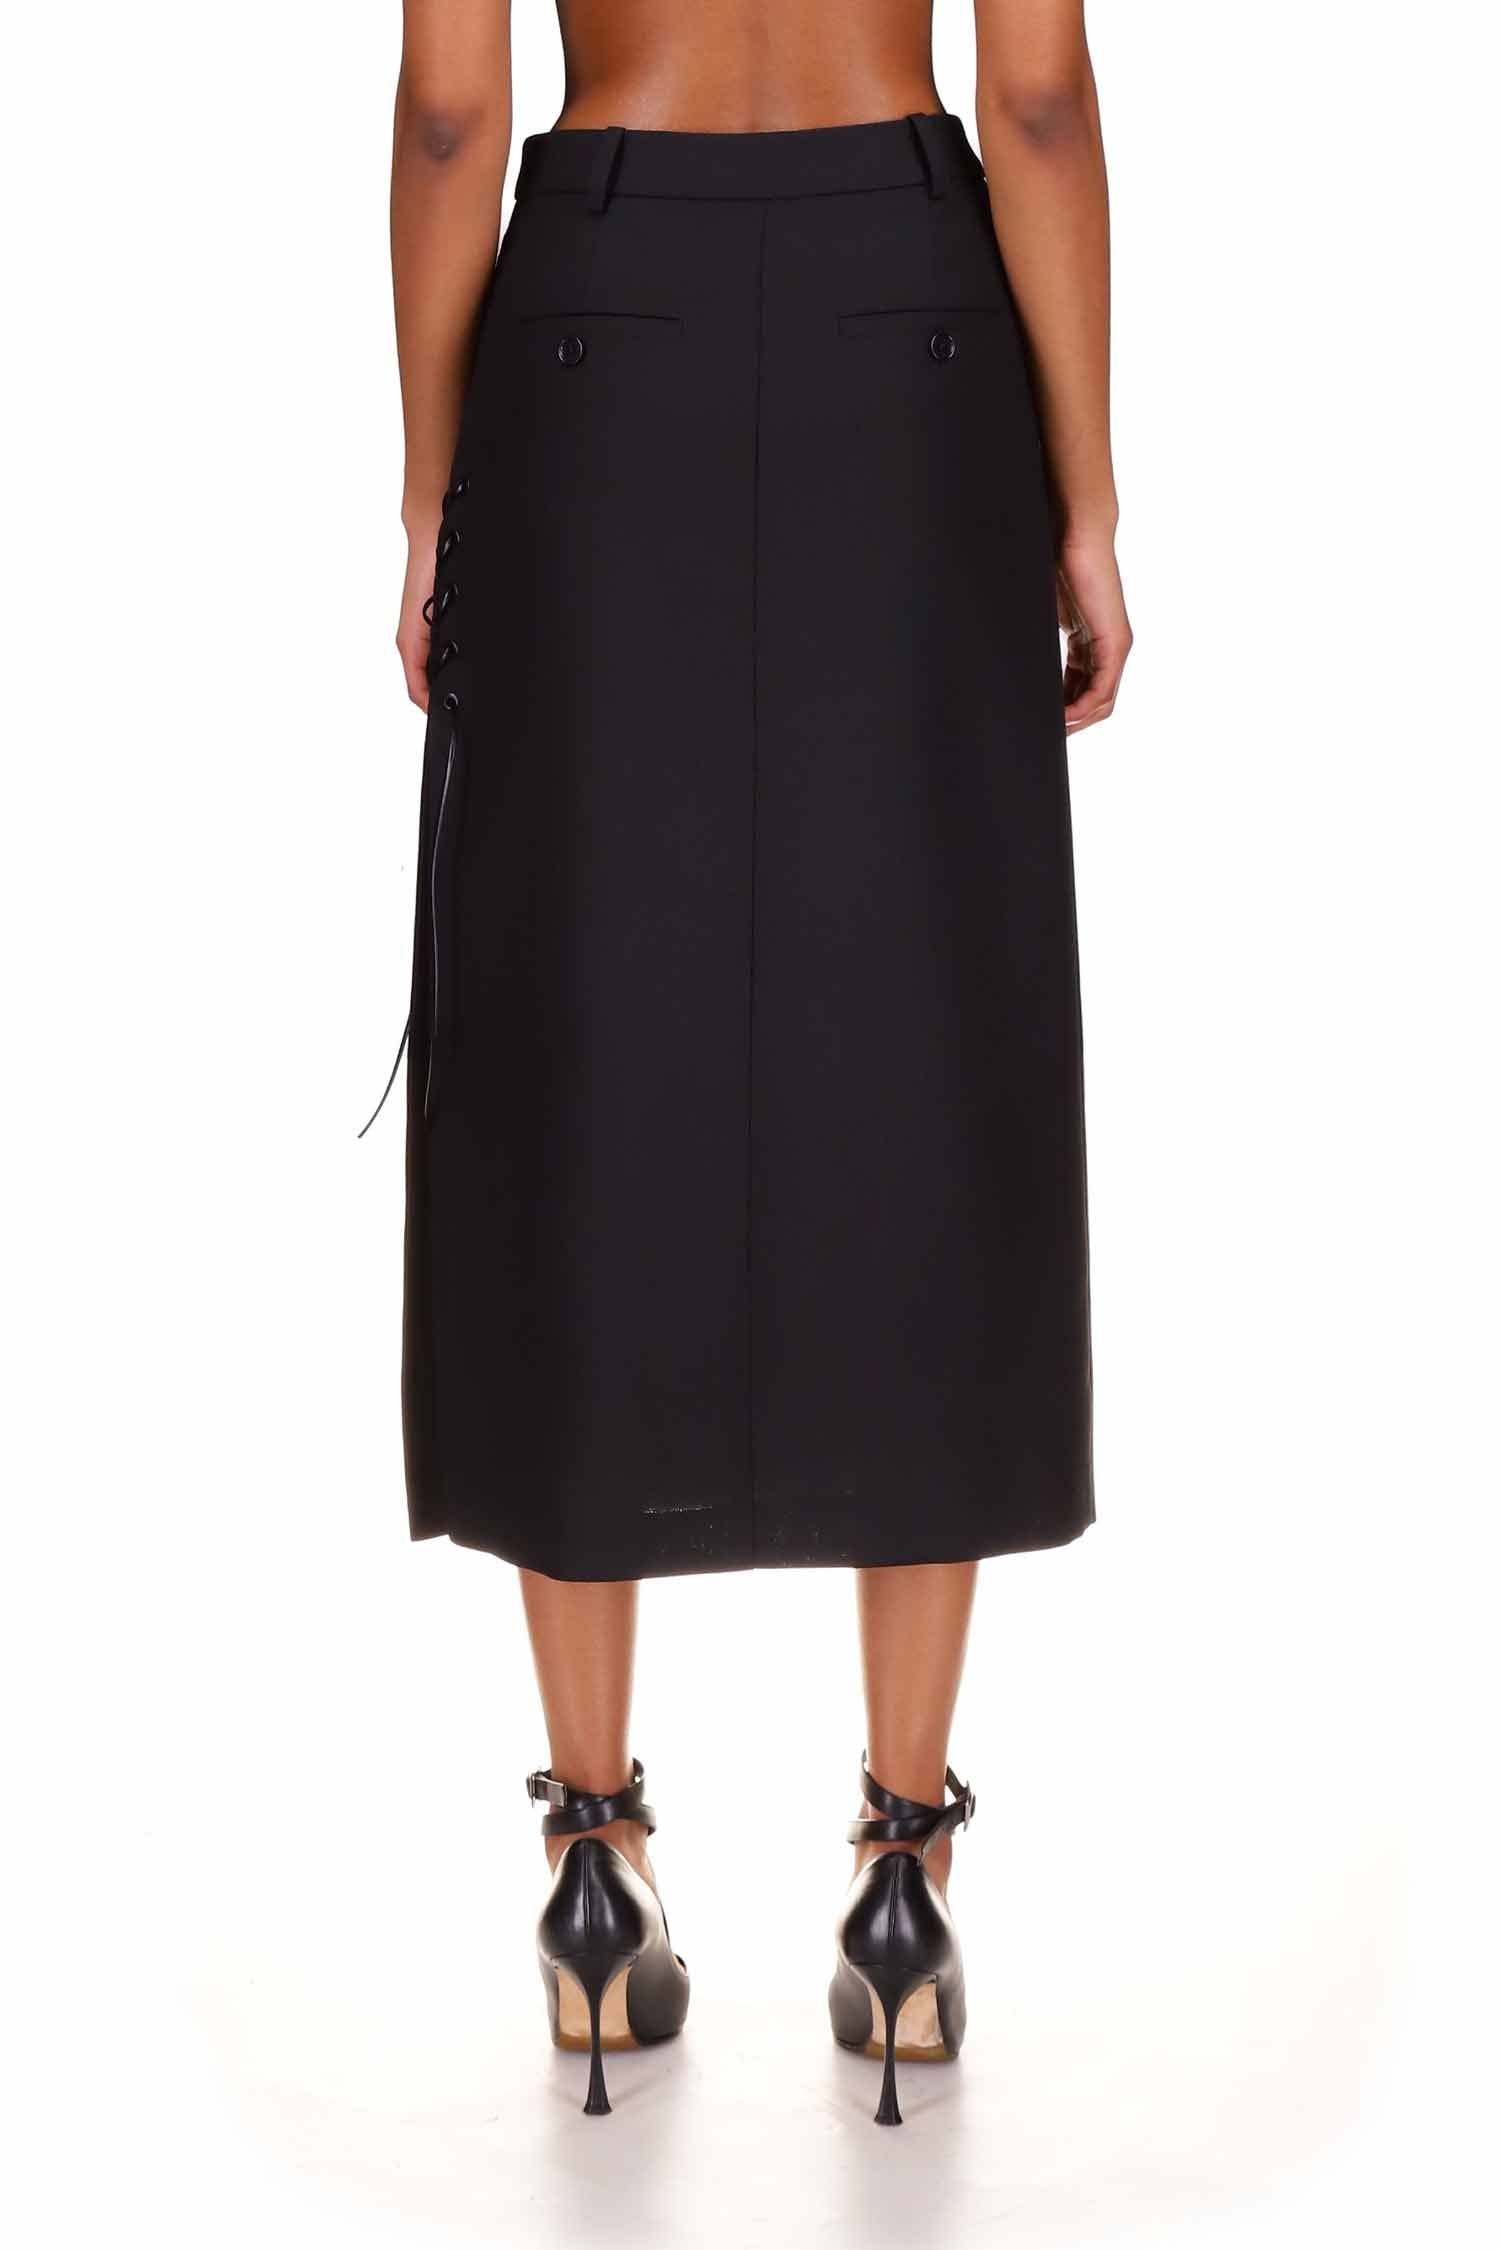 Unique Bargains Women's 2 Piece Long Sleeve Blazer and Pencil Skirt Outfit  Set XL Black - Walmart.com